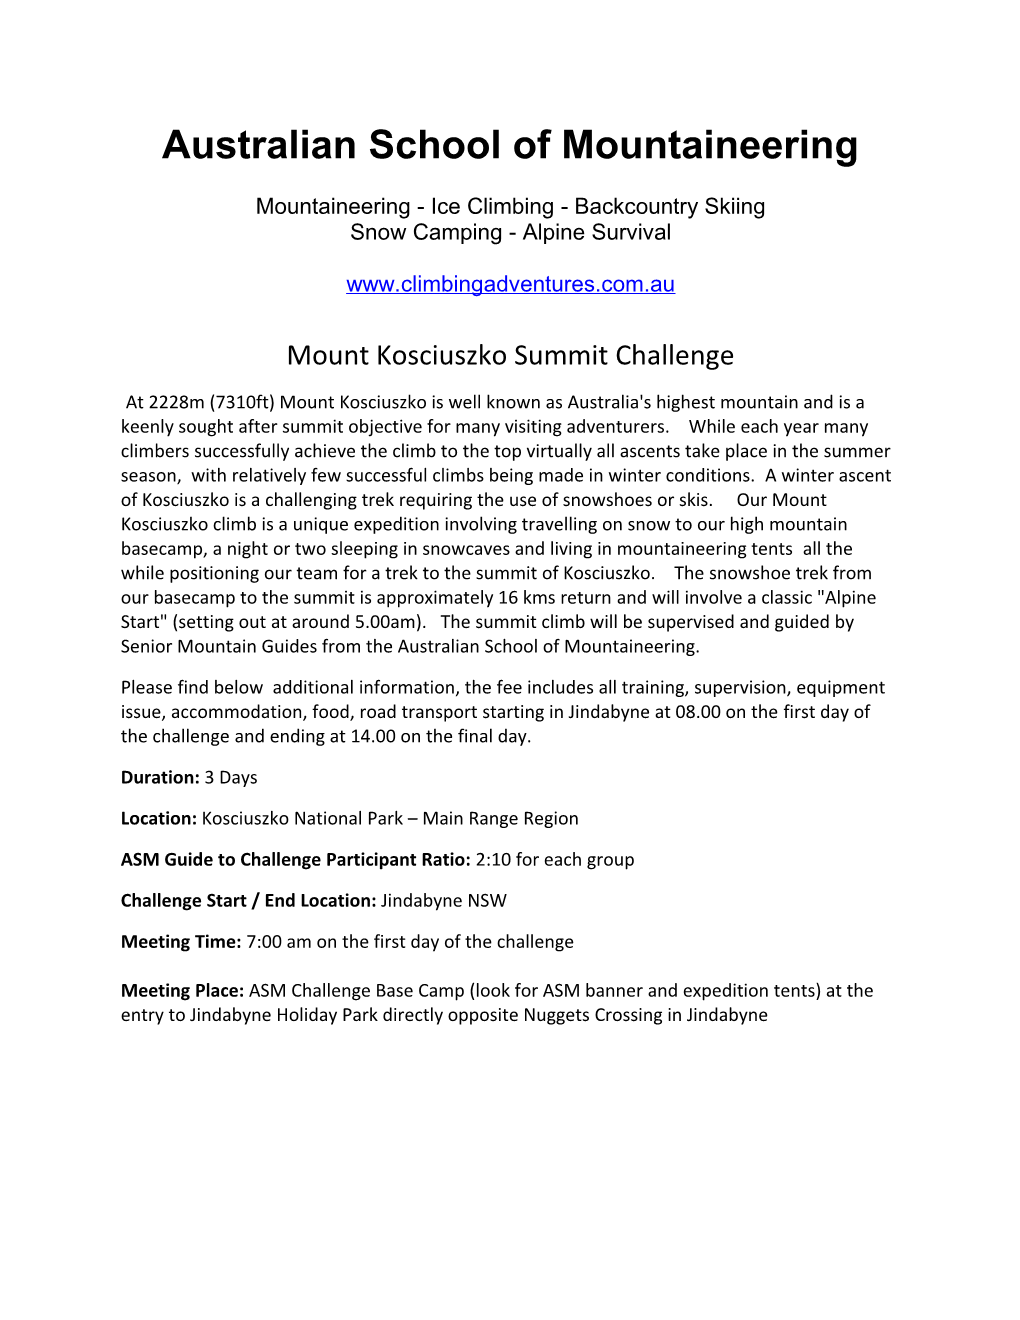 Australian School of Mountaineering Mountaineering - Ice Climbing - Backcountry Skiing